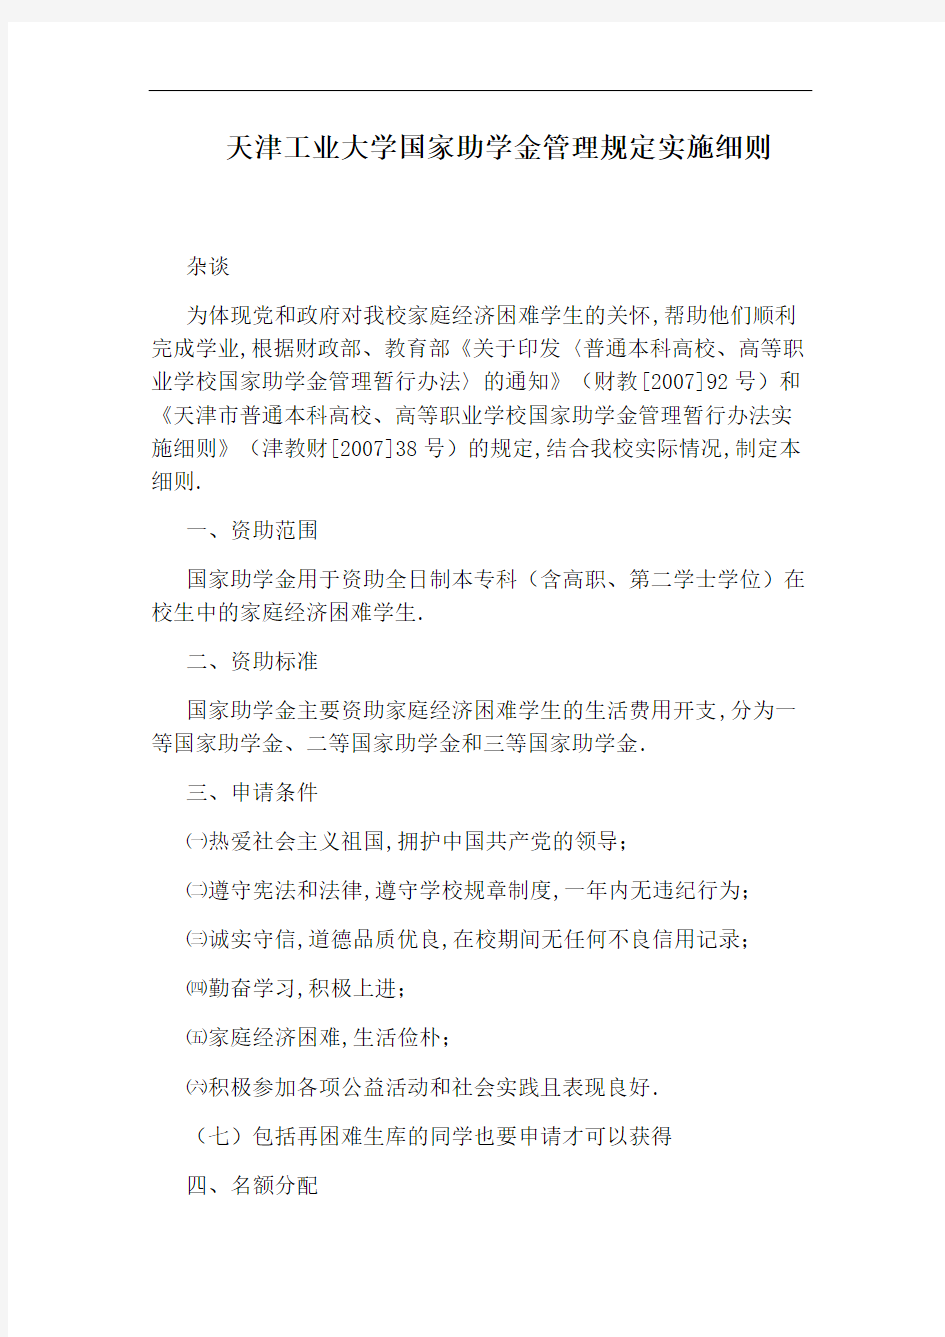 天津工业大学国家助学金管理规定实施细则